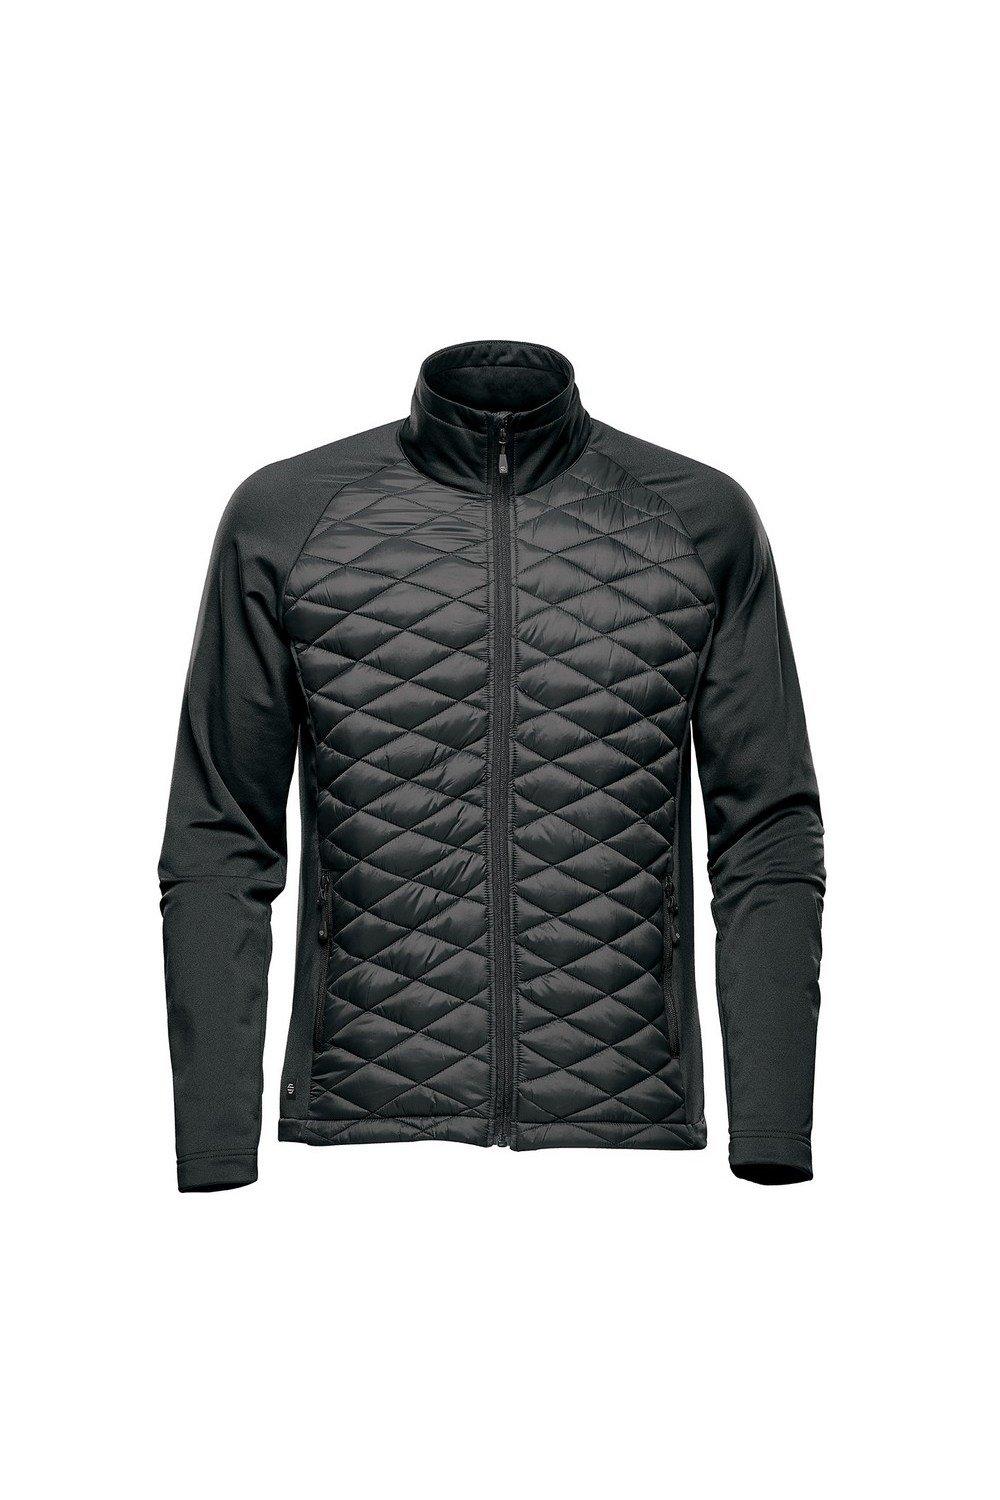 Куртка Boulder Thermal Soft Shell Stormtech, черный куртка nostromo thermal soft shell stormtech серый